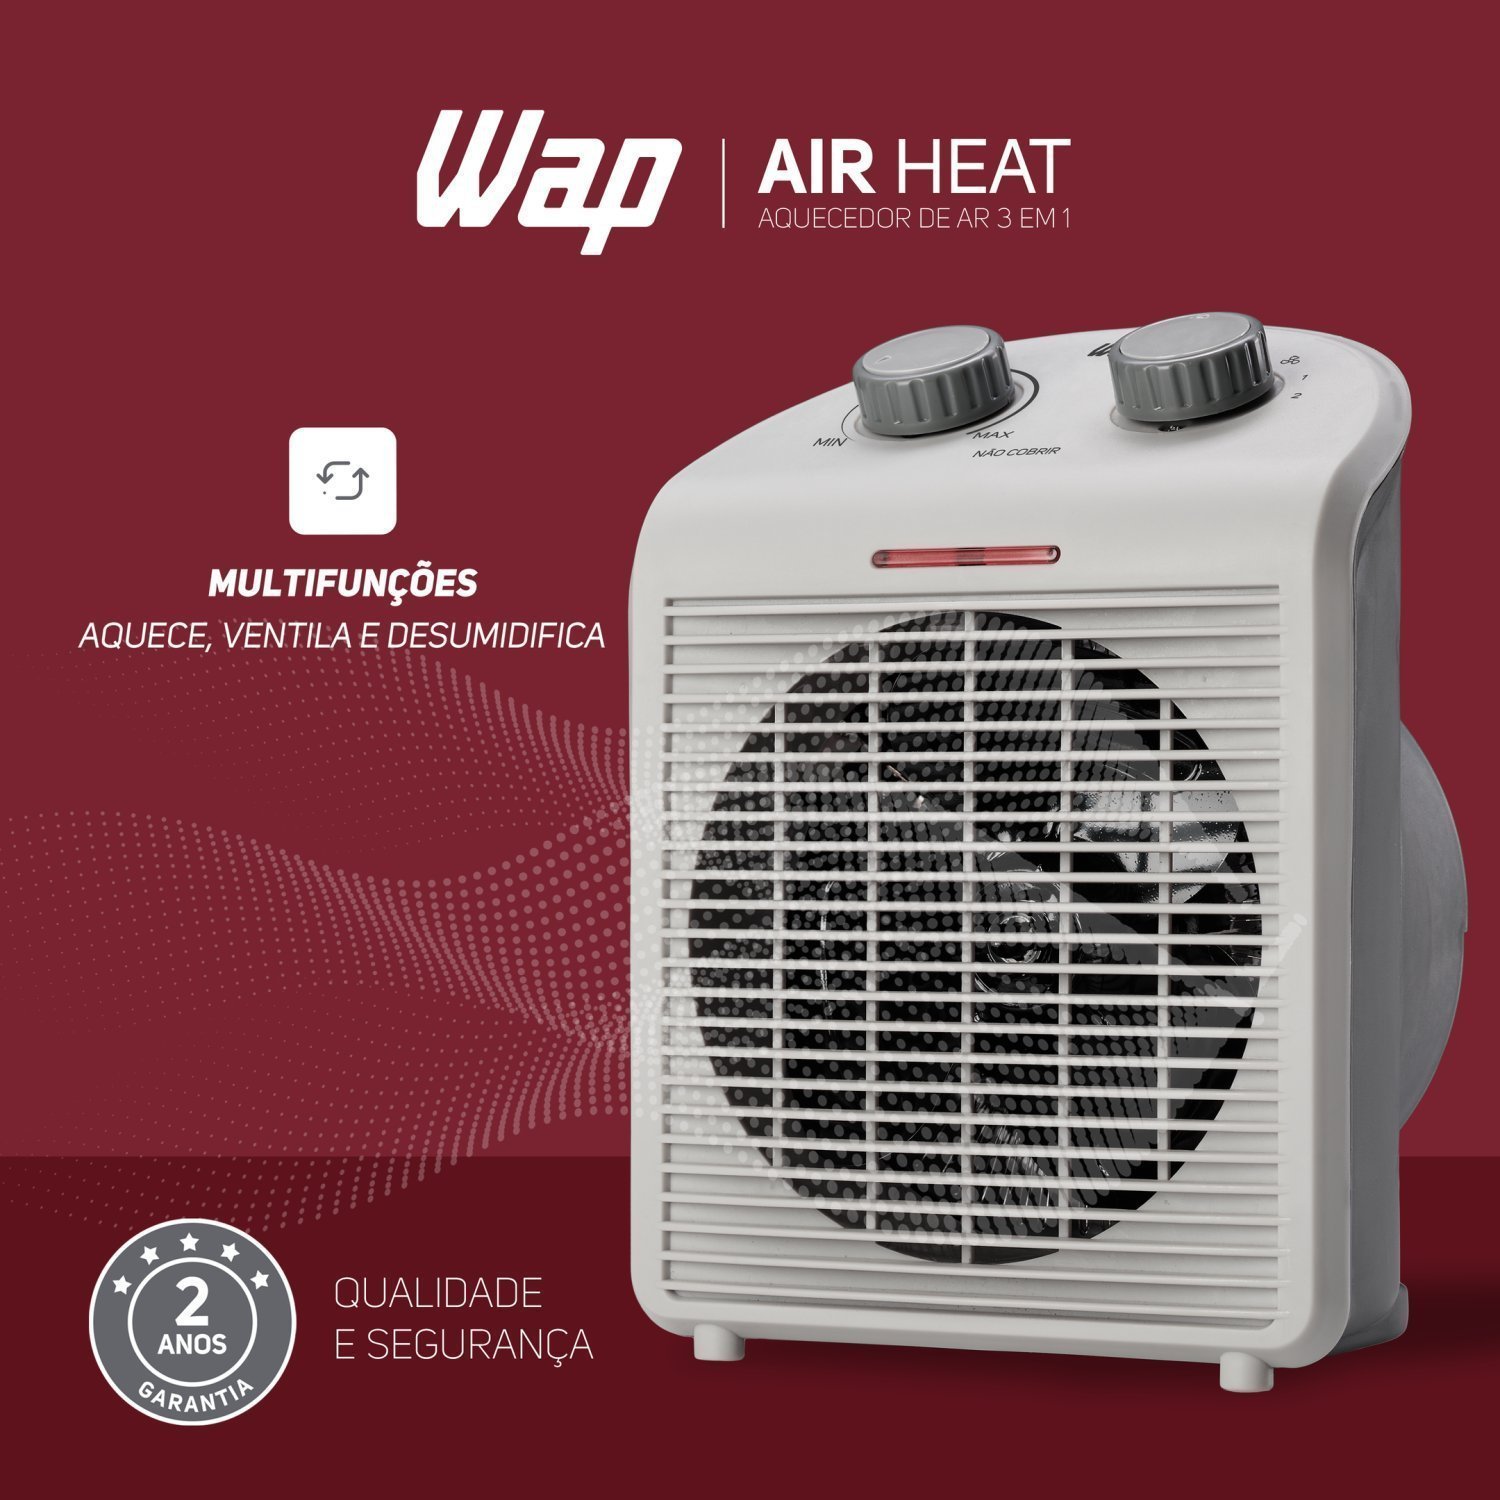 Aquecedor de Ar Portátil Air Heat 3 em 1 1500w 220v WAP Branco - 4